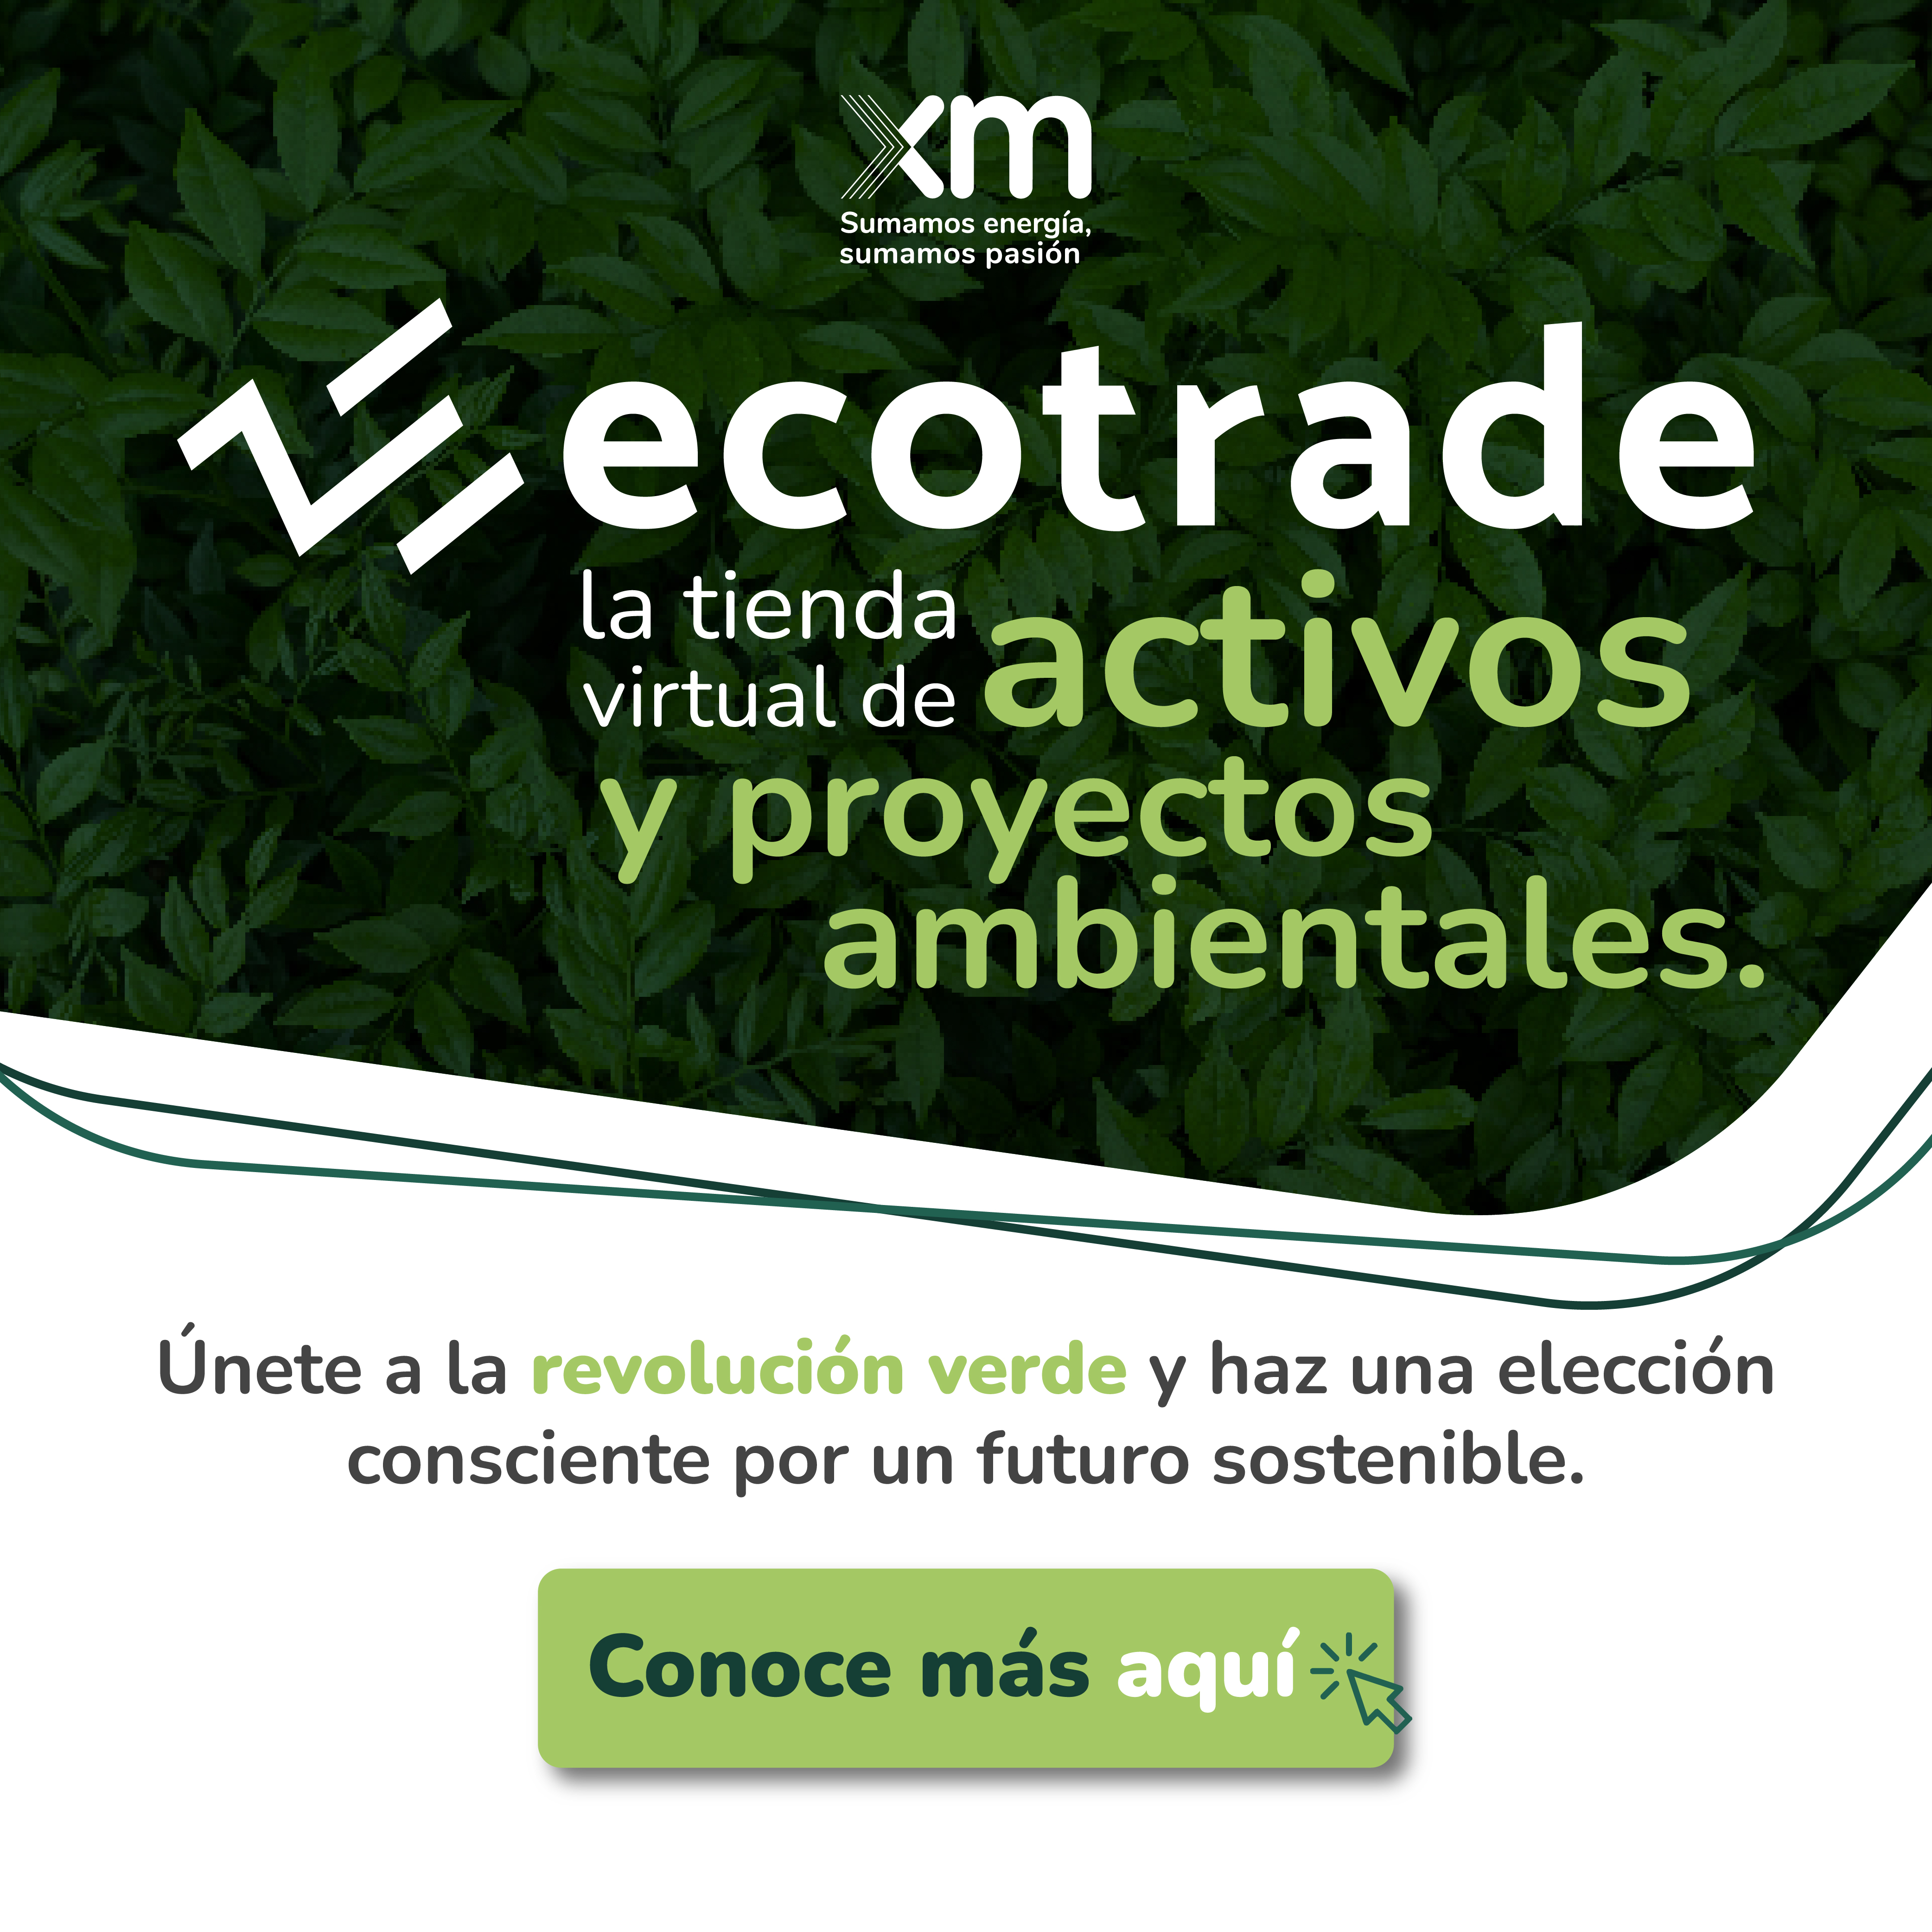 Ecotrade, la nueva tienda de activos y proyectos ambientales